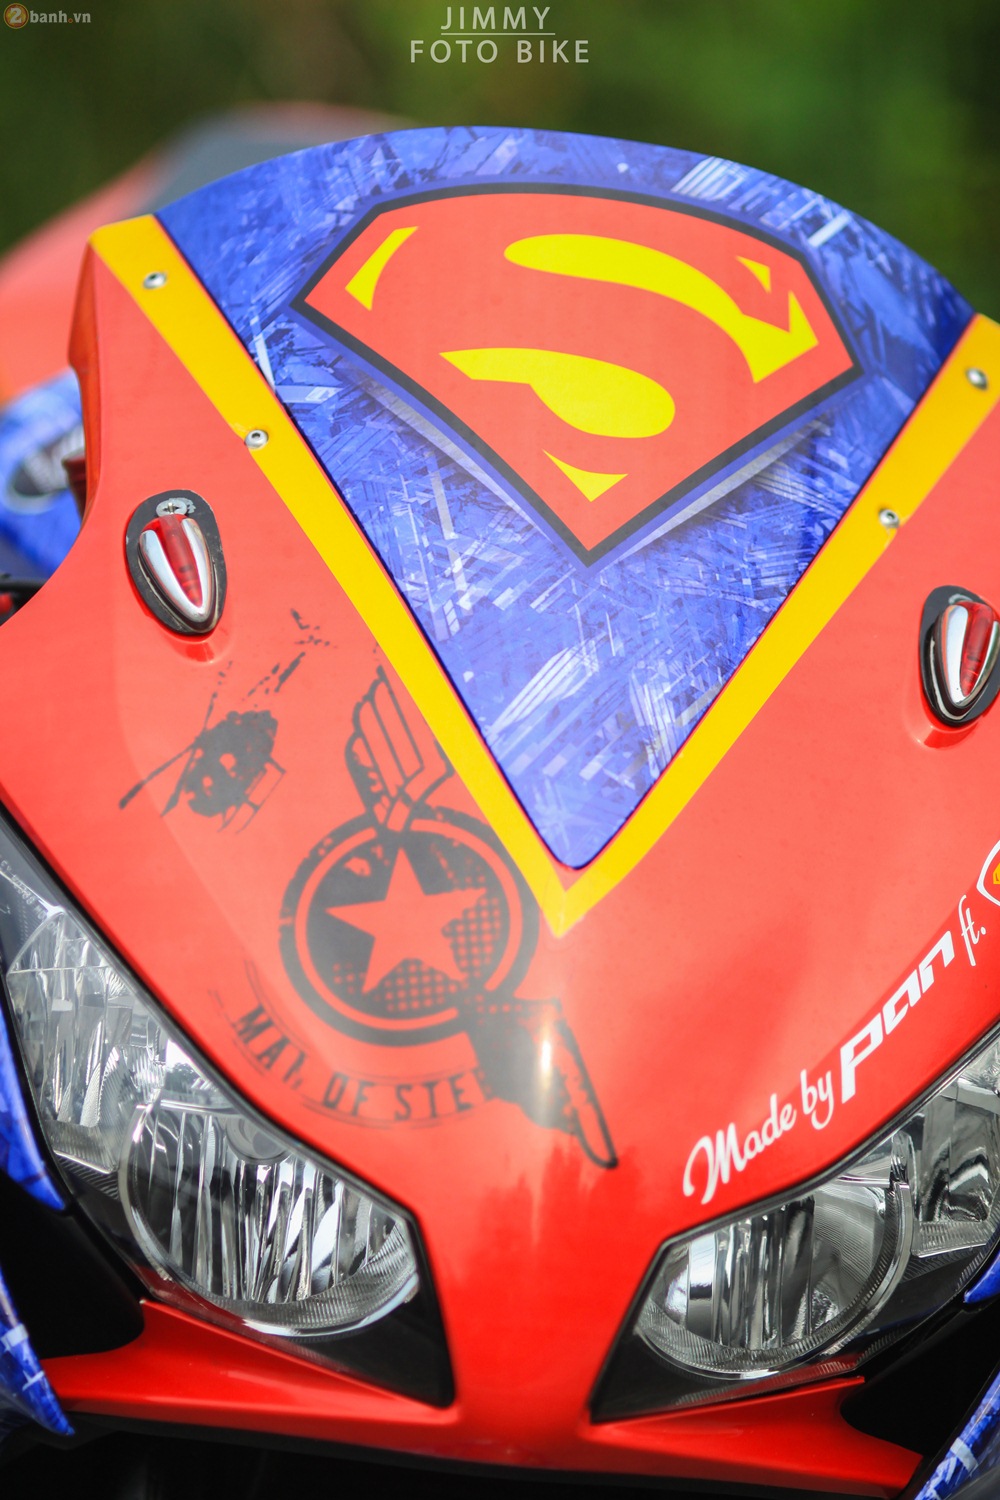 CBR1000RR phien ban Superman man of steel ca tinh tai Sai Gon - 6